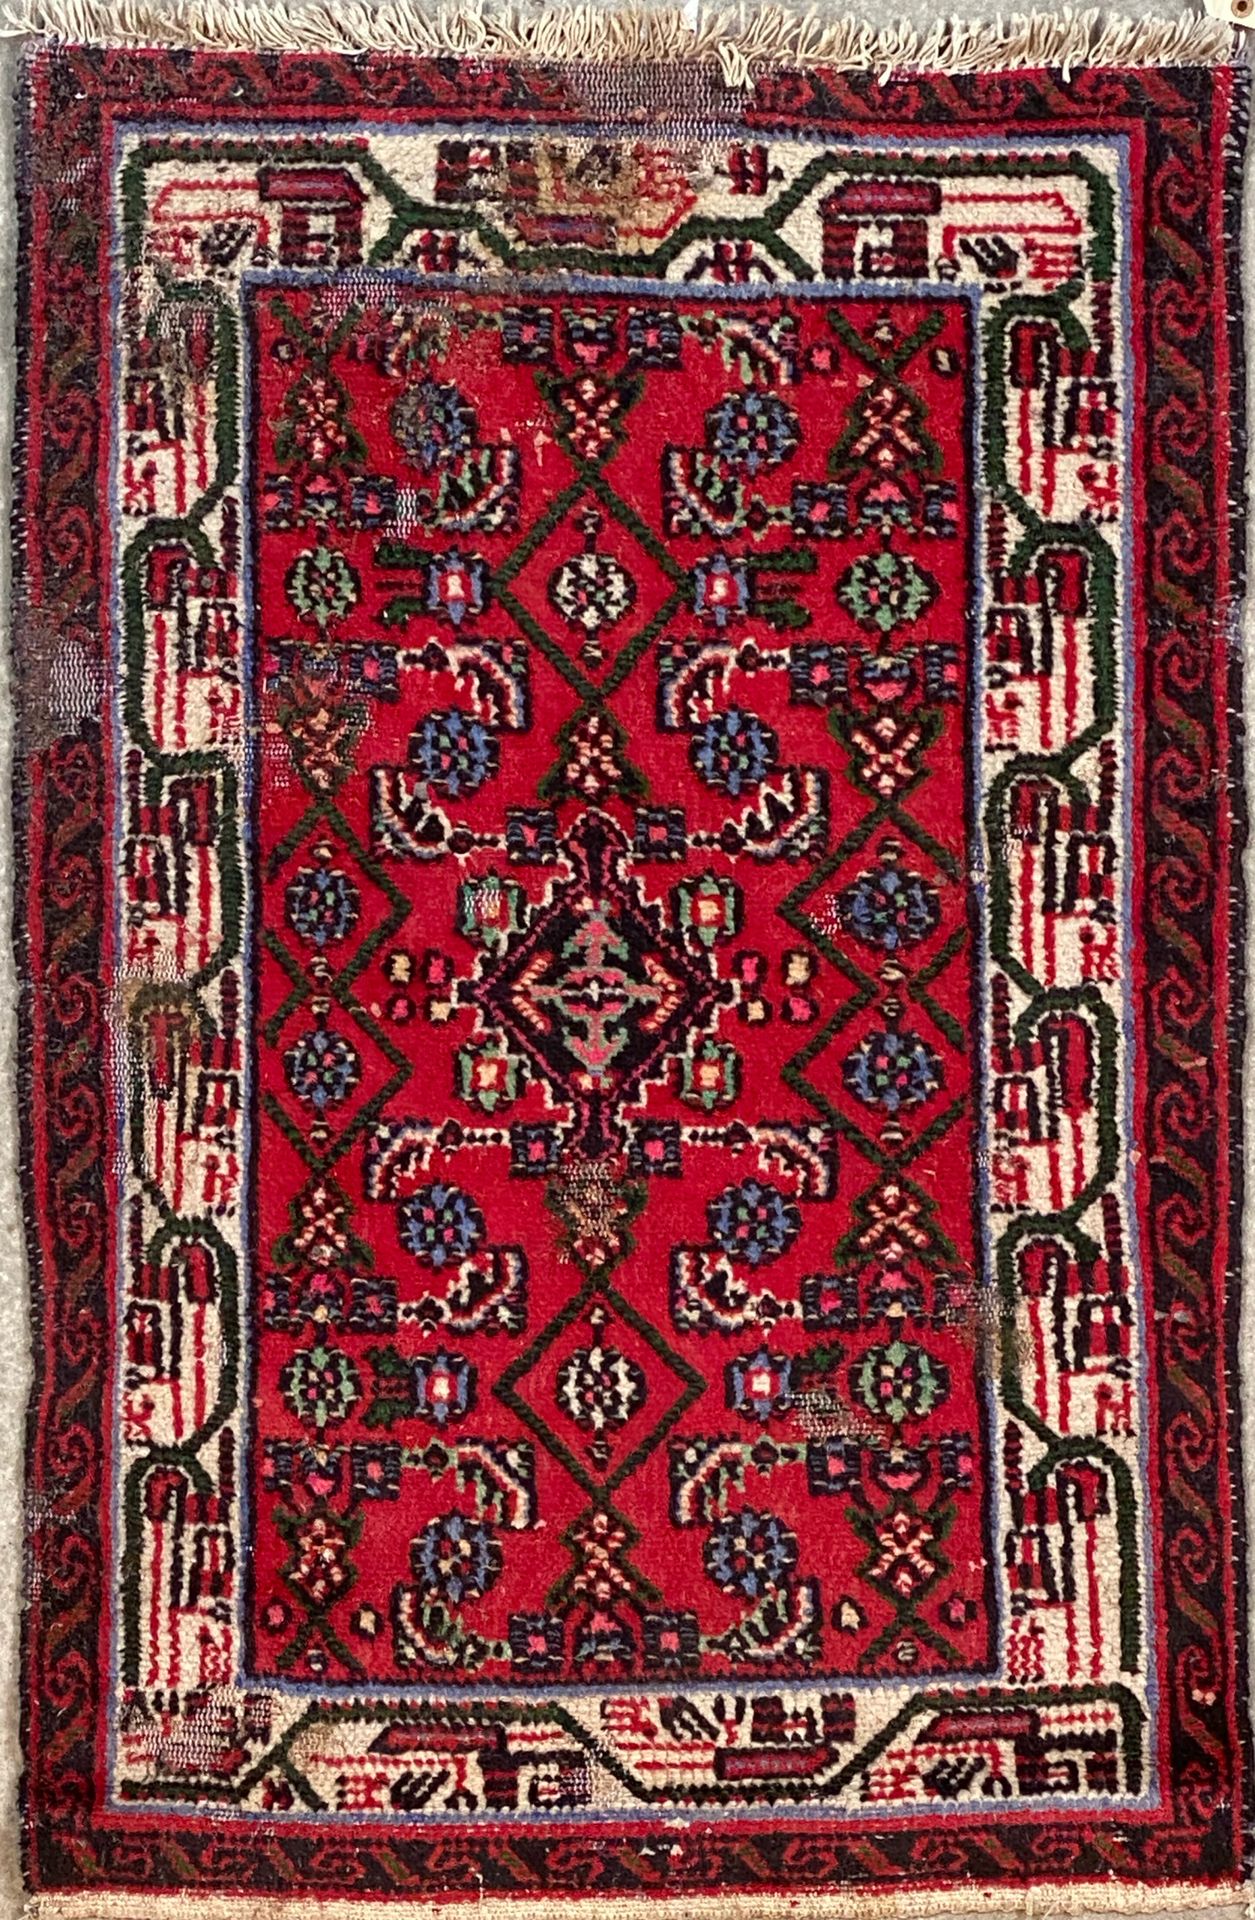 Null 红底几何图案的地毯，双层边框

114 x 73 cm

磨损的